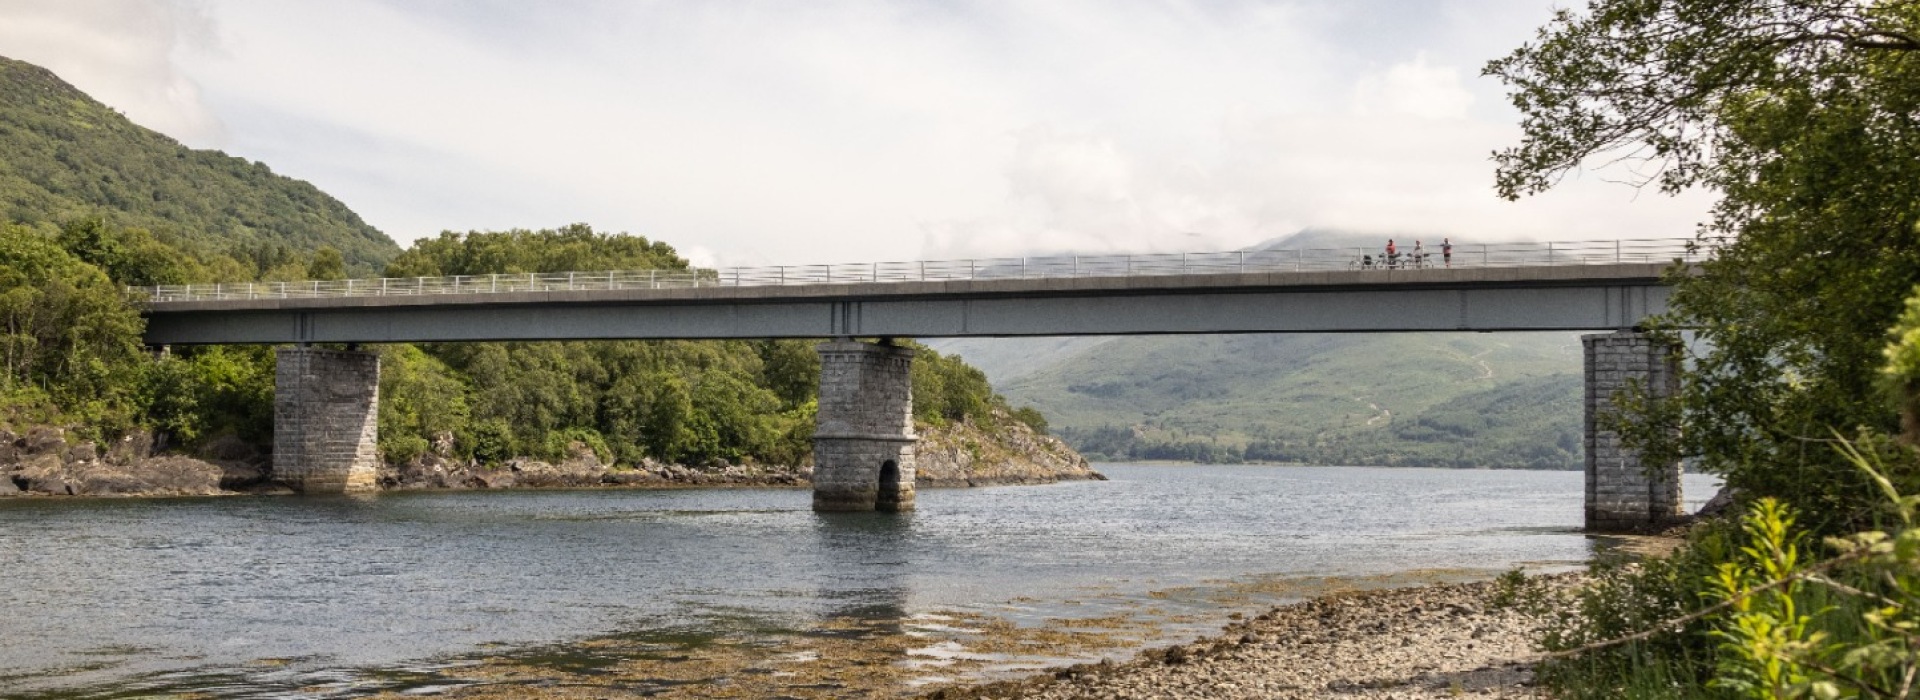 Creagan New Bridge, Loch Creran